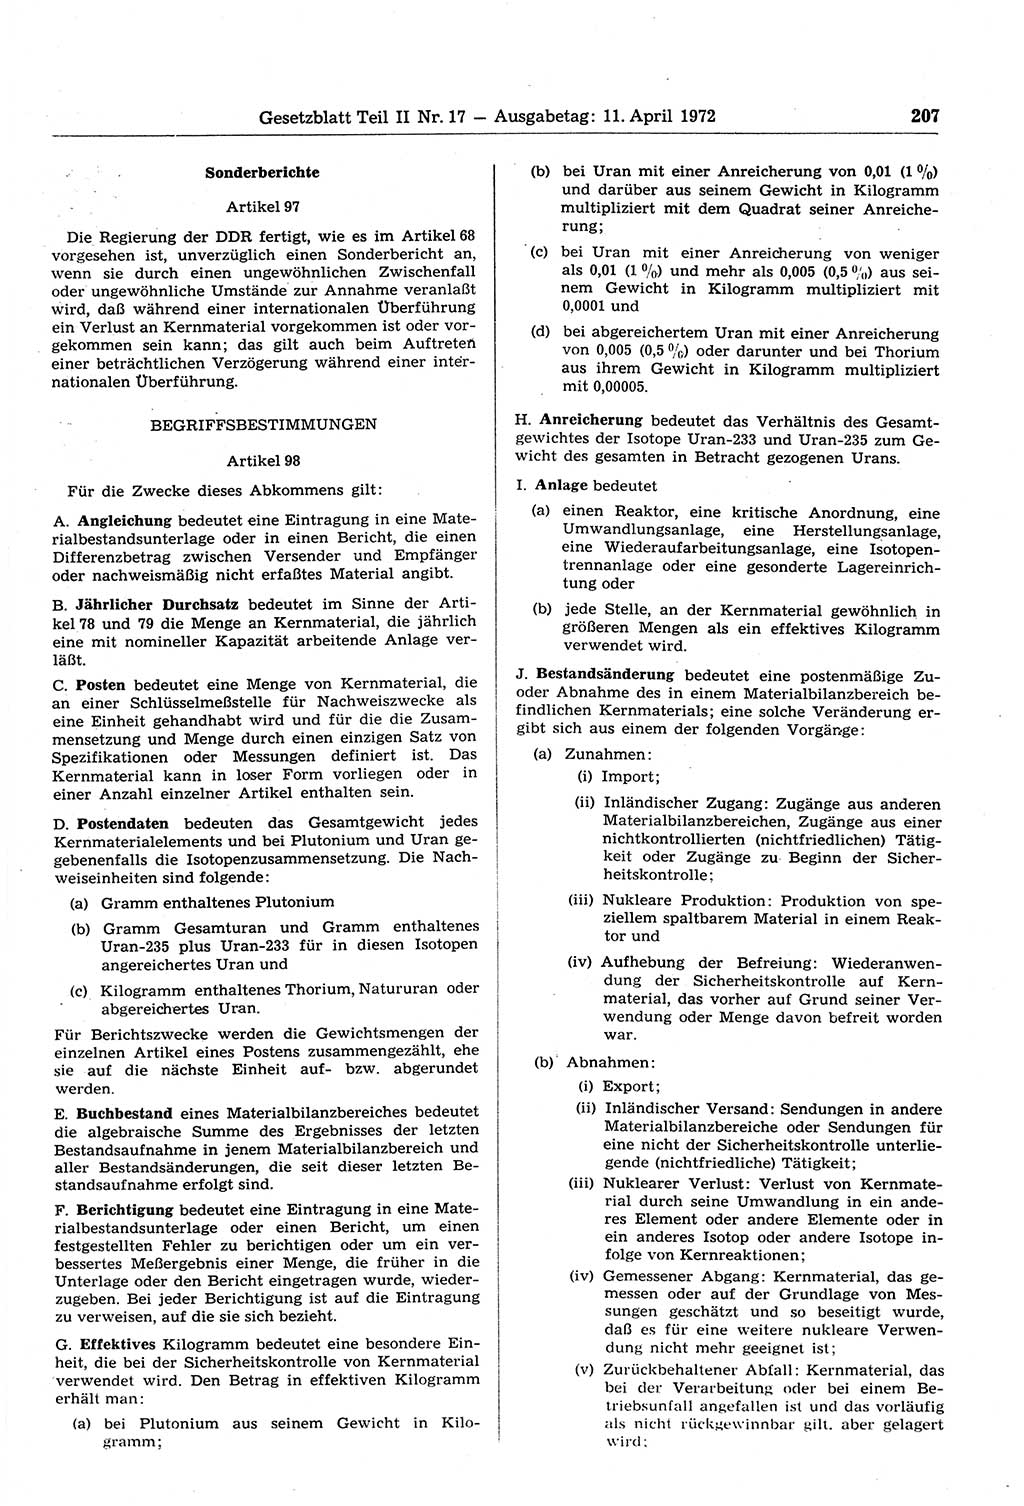 Gesetzblatt (GBl.) der Deutschen Demokratischen Republik (DDR) Teil ⅠⅠ 1972, Seite 207 (GBl. DDR ⅠⅠ 1972, S. 207)